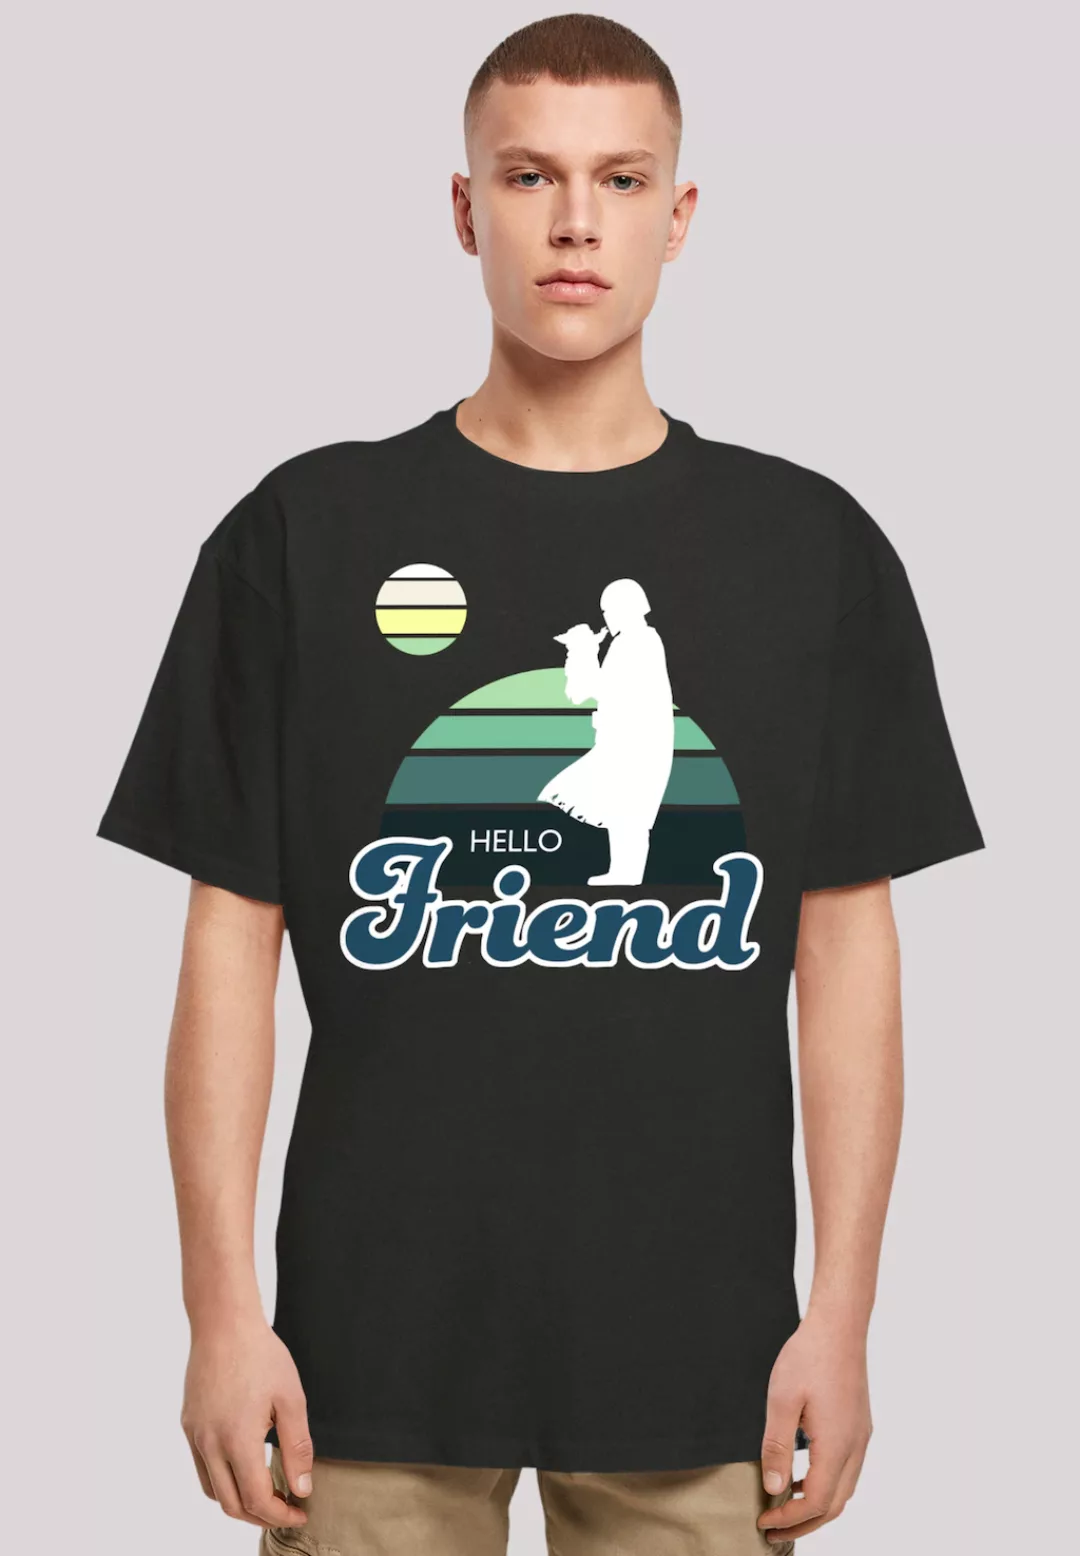 F4NT4STIC T-Shirt "Star Wars The Mandalorian Hello Friend", Premium Qualitä günstig online kaufen